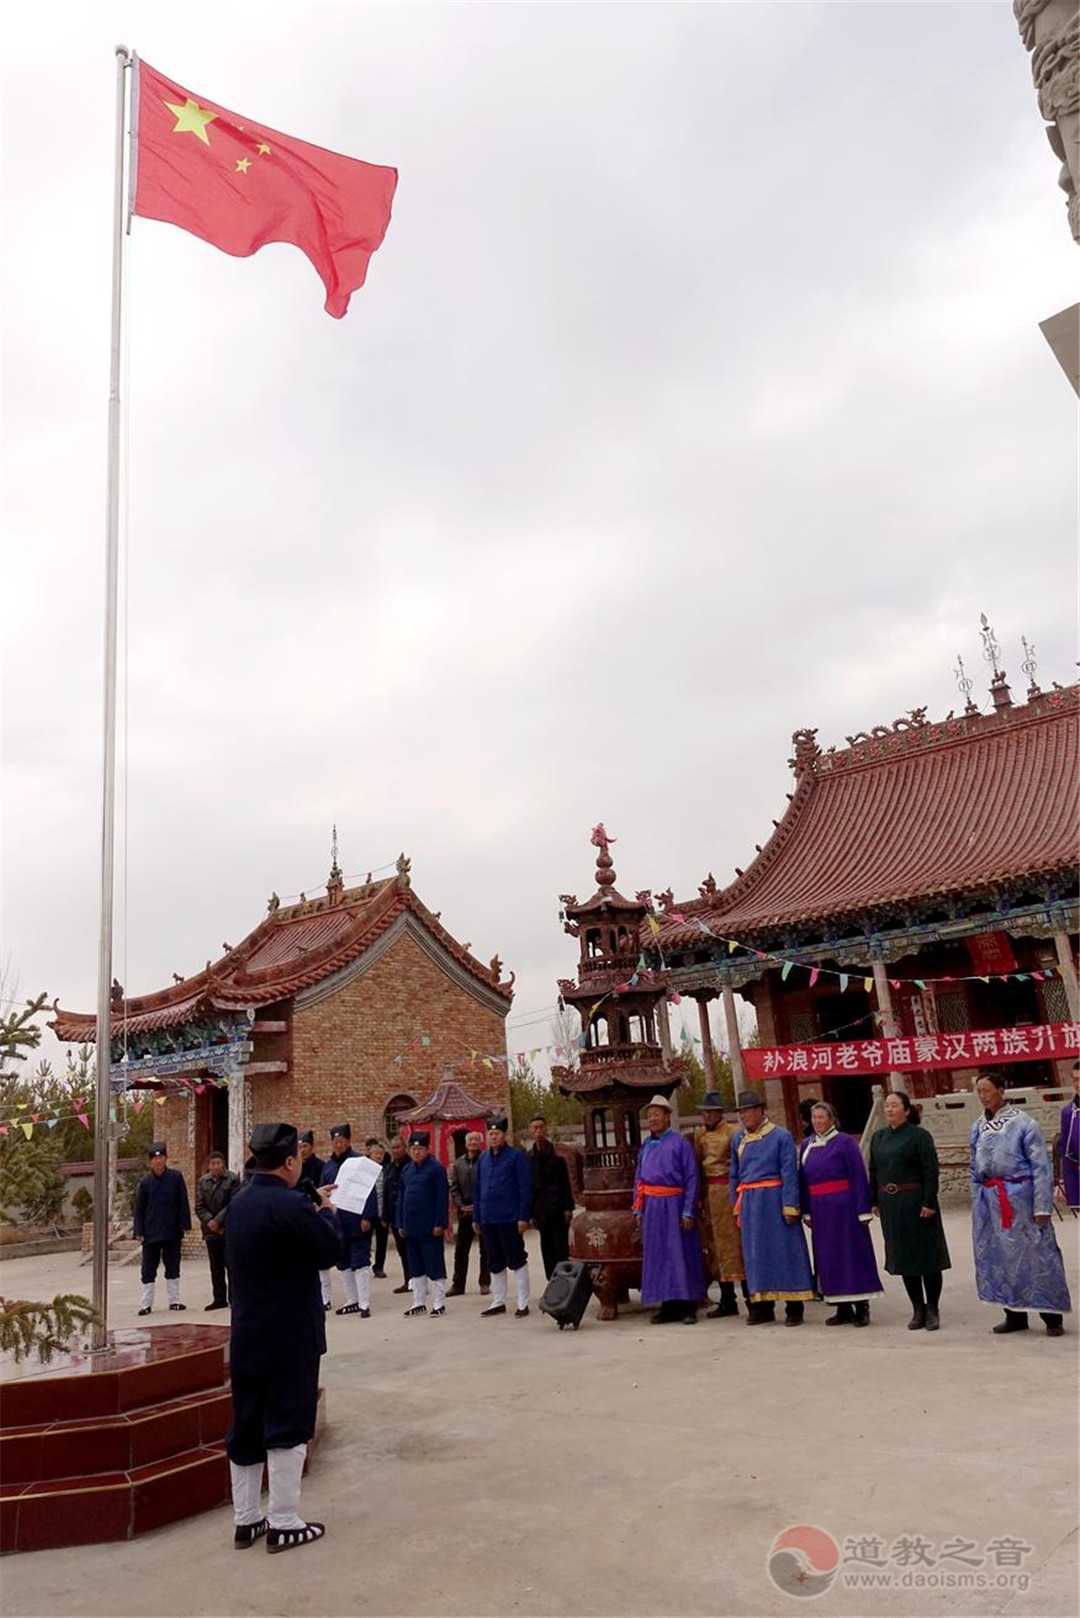 蒙汉信众在陕西榆阳乌拉耳林龙王庙和老爷庙举行升国旗仪式